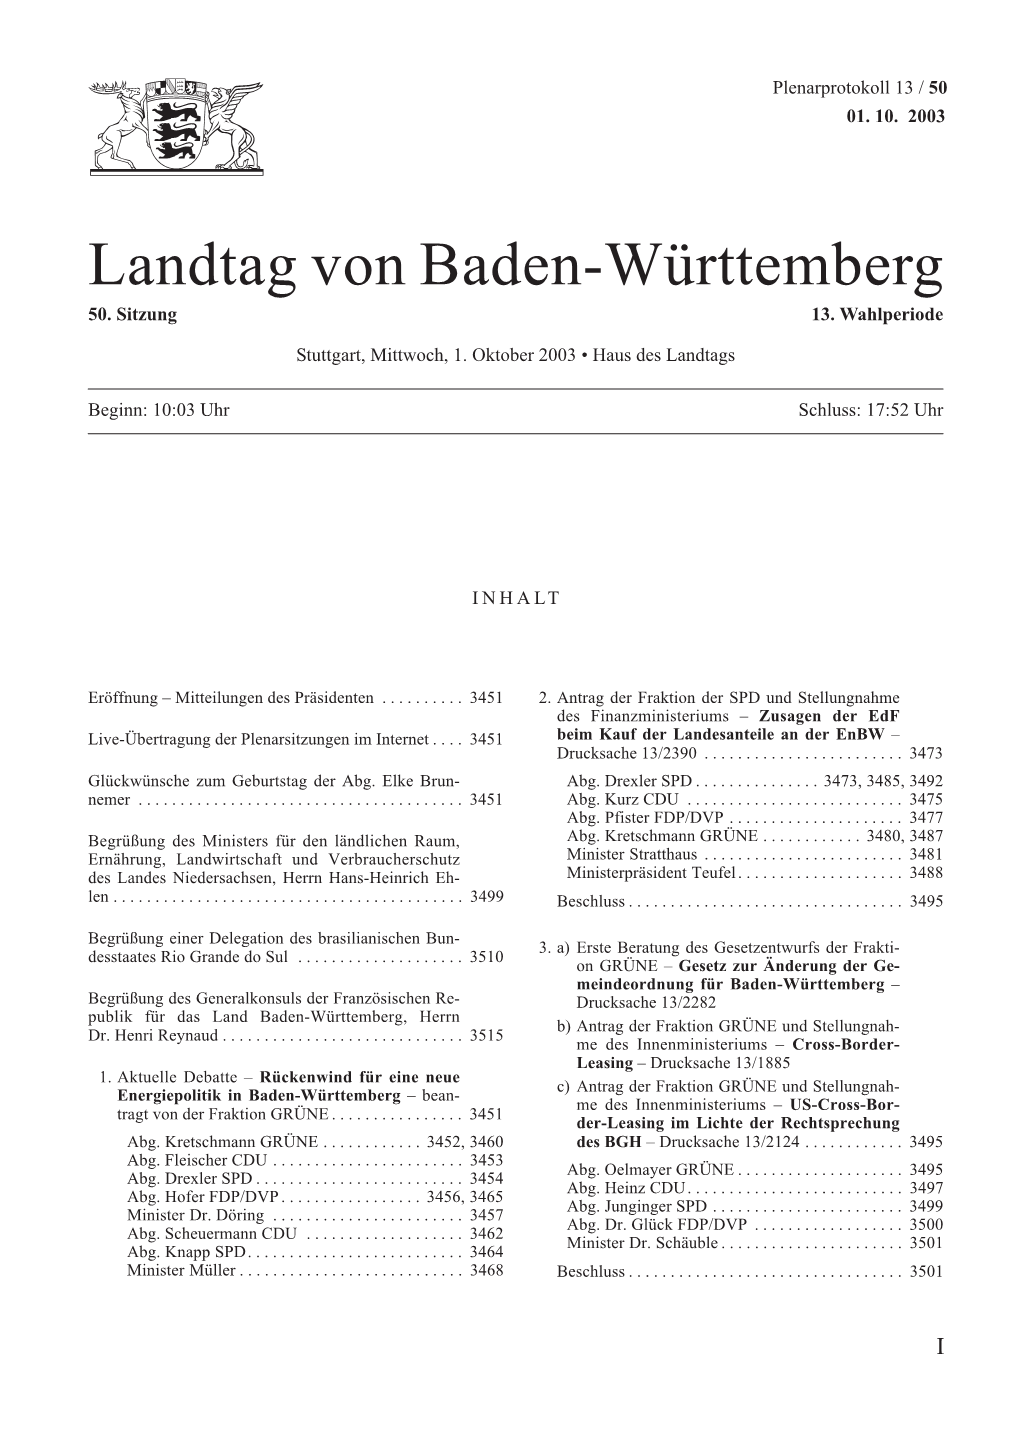 Landtag Von Baden-Württemberg 50